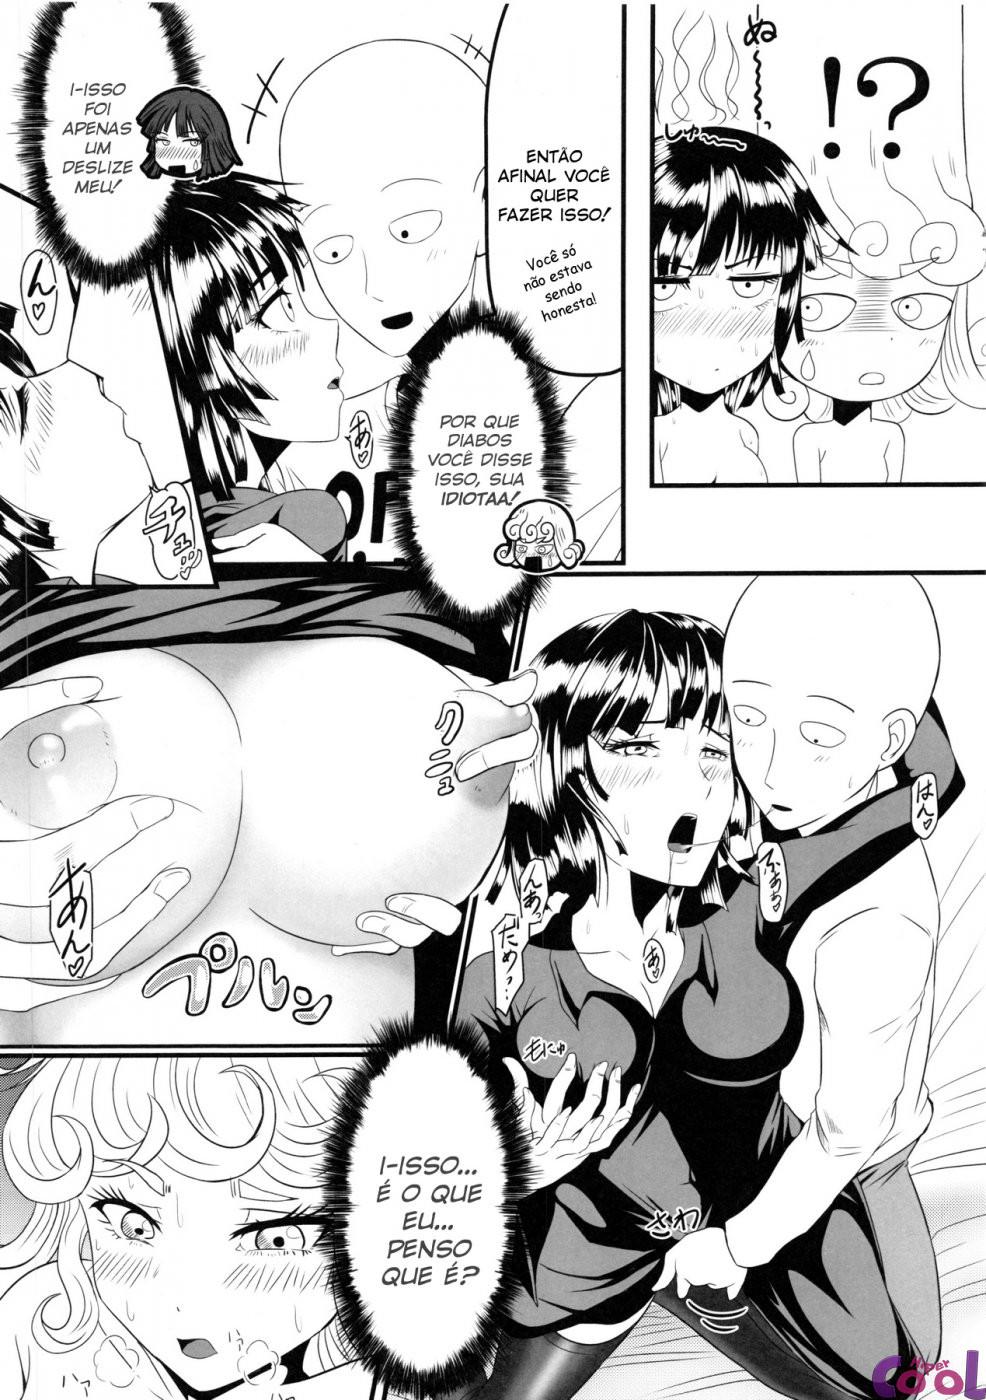 dekoboko-love-sister-chapter-01-page-08.jpg